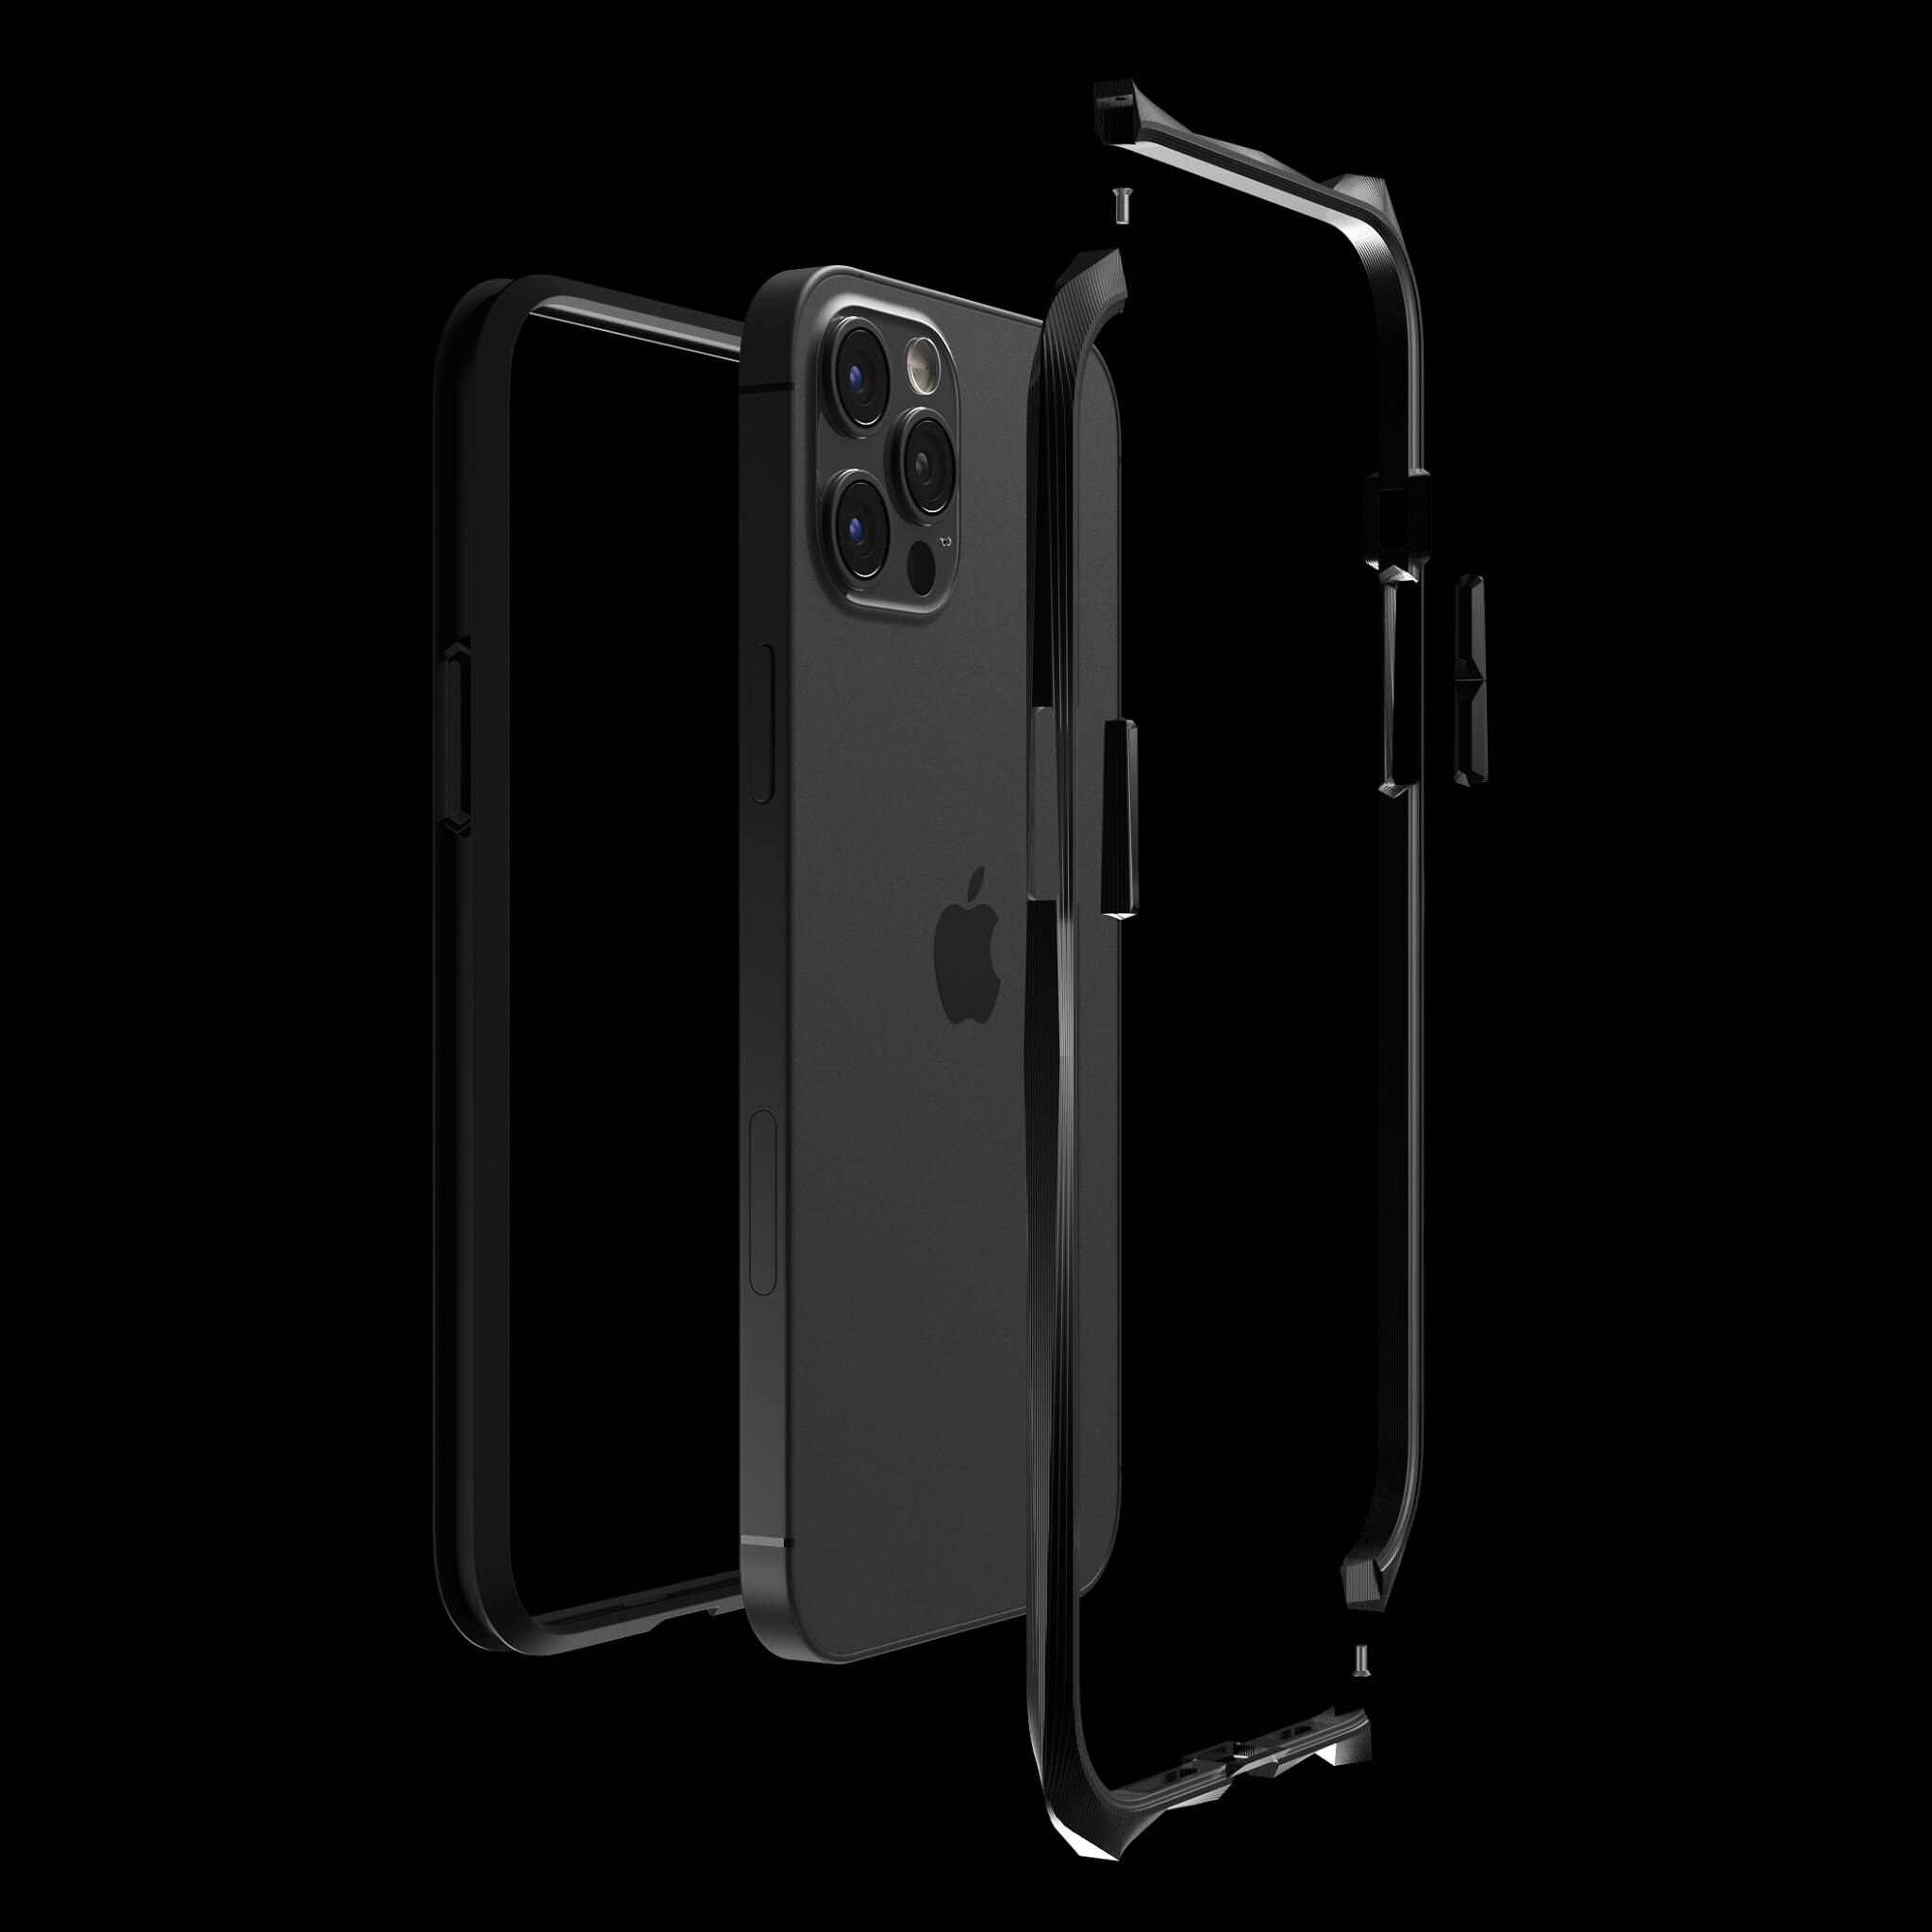 Advent Stealth Black Pvd Titanium Luxury Iphone 12 Pro Max Cases